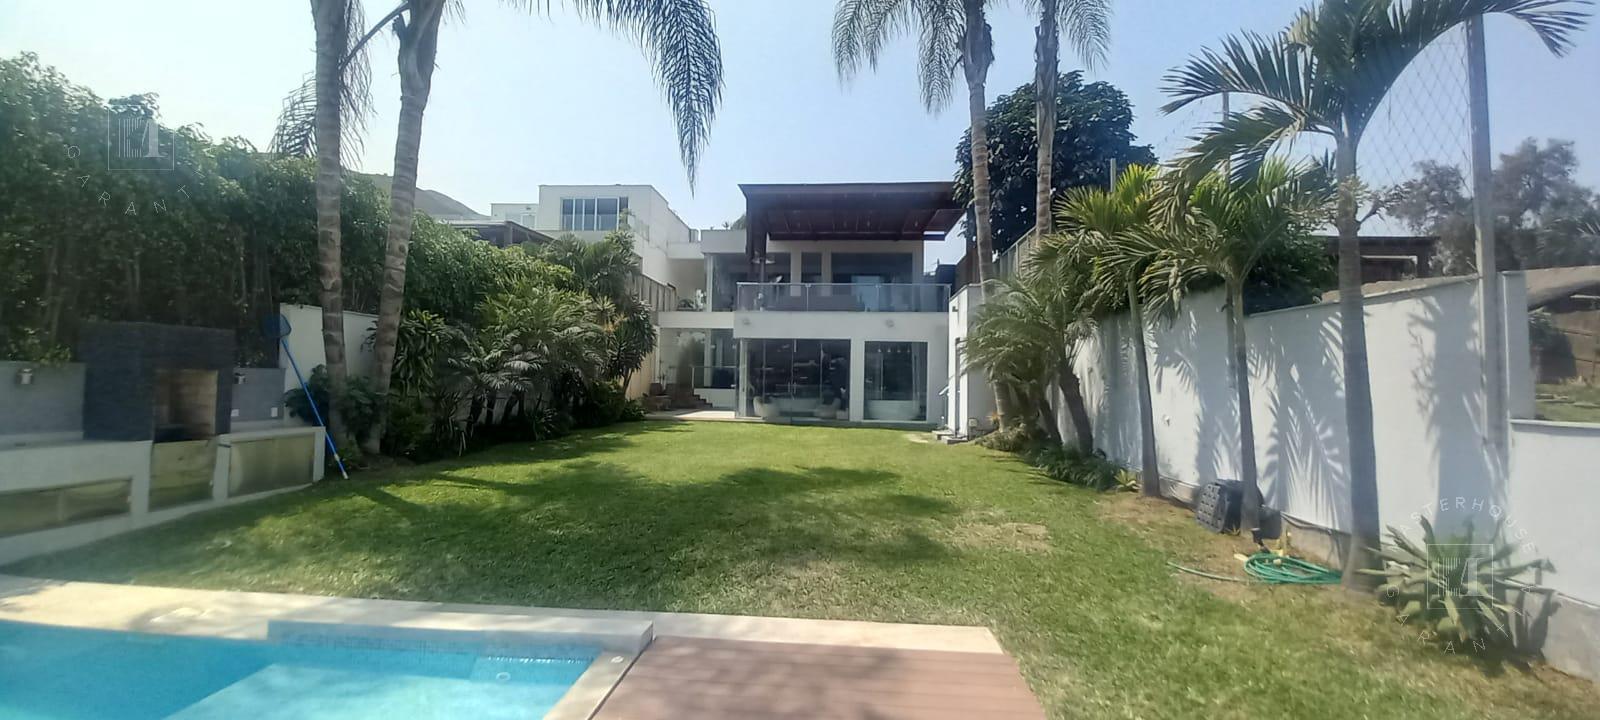 Casa en Venta ubicado en Peru a $1,050,000